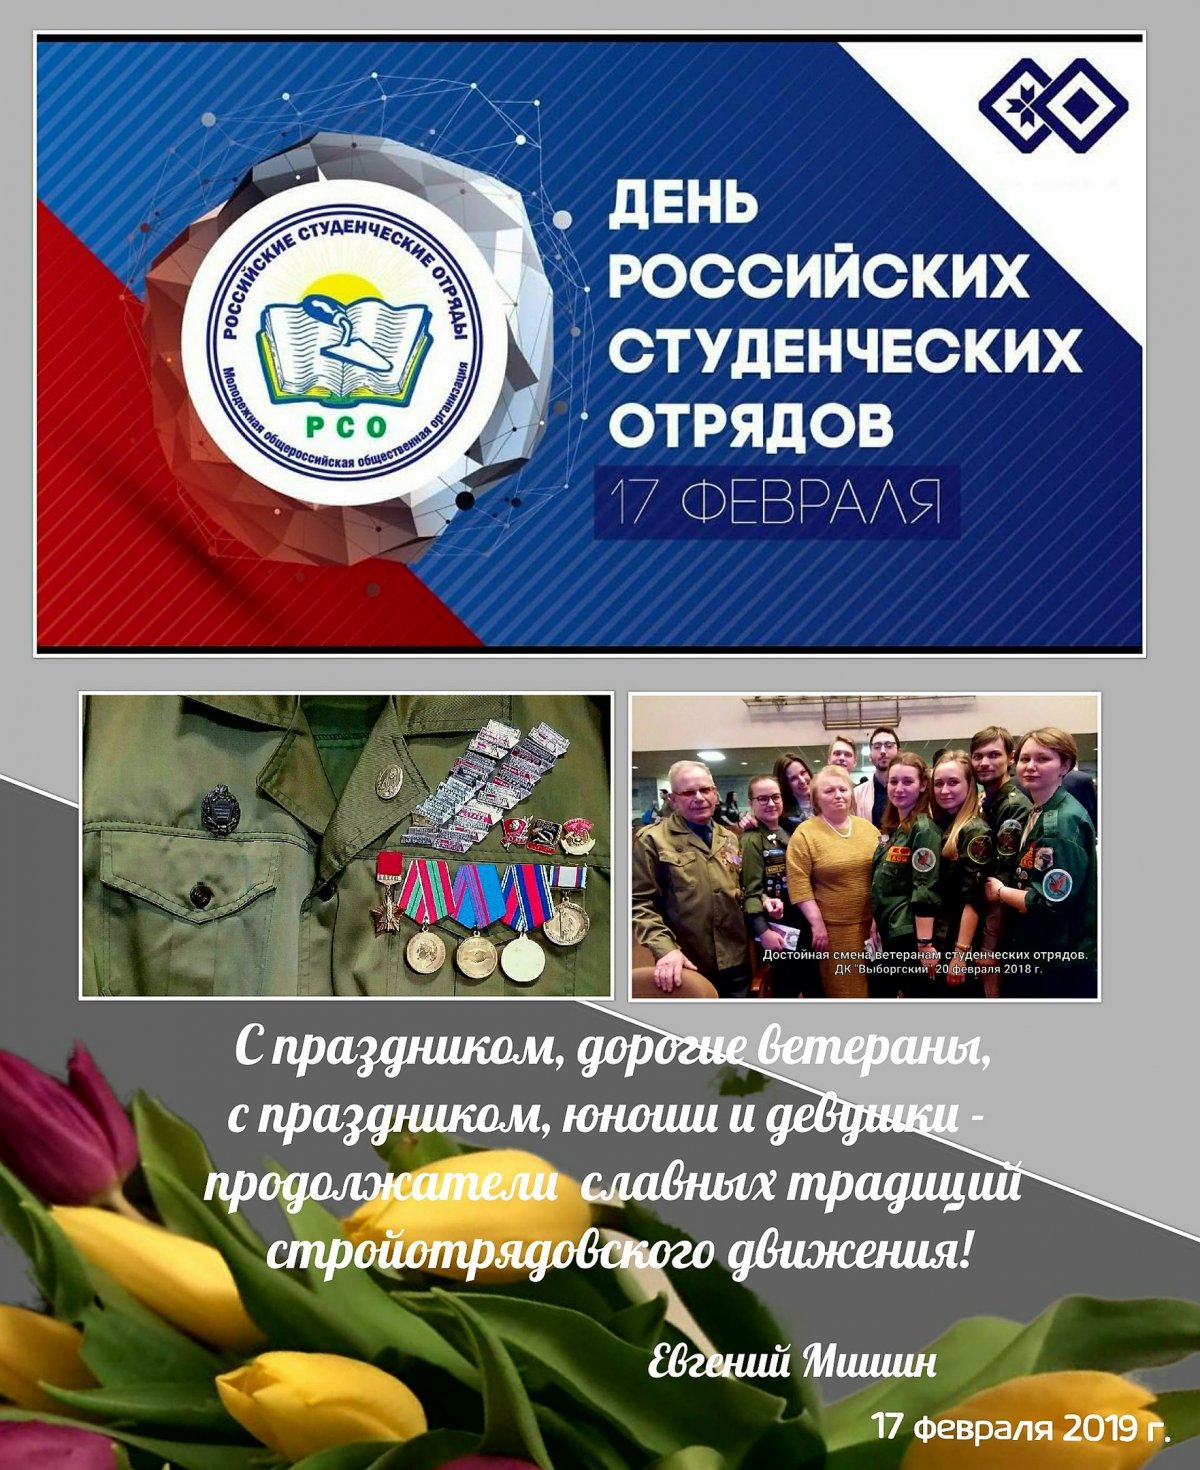 С праздником участников всех поколений стройотрядовского движения в СССР и России, в Сангиге, академии и университете!